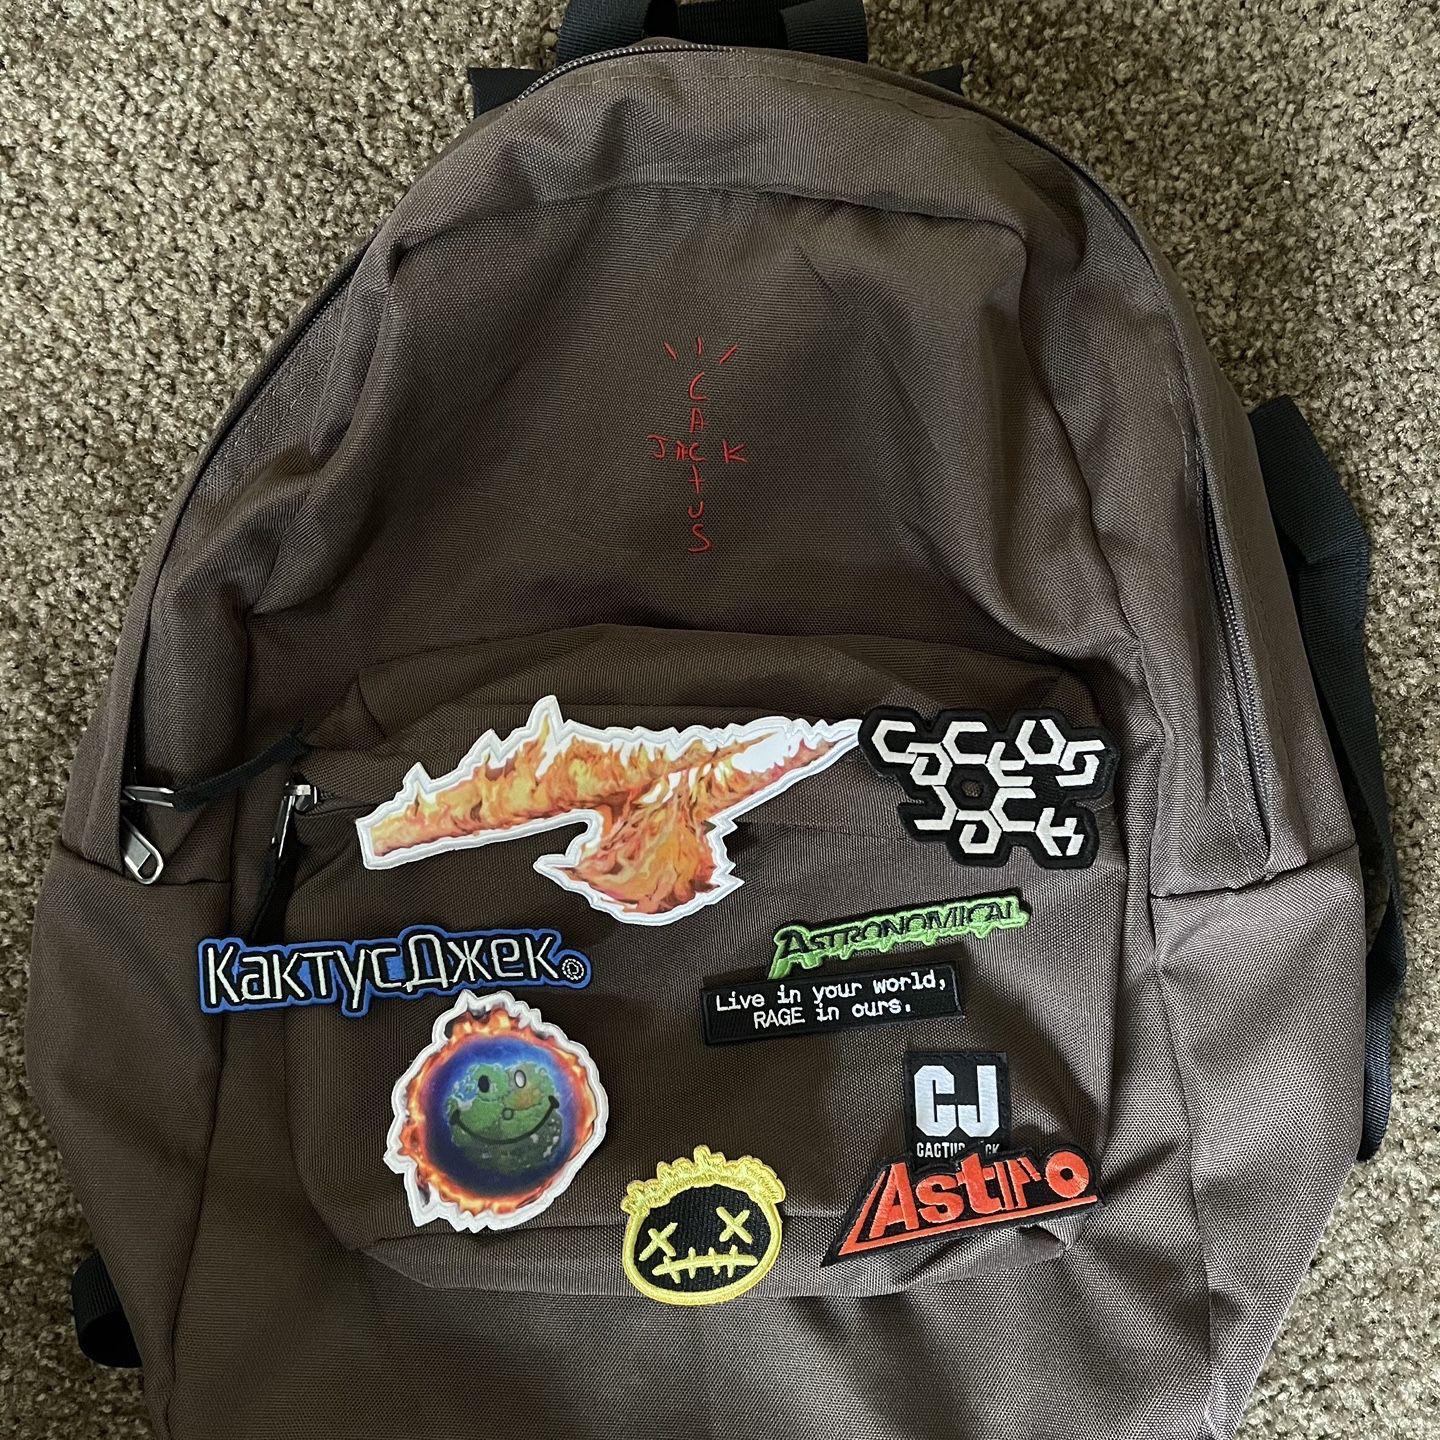 travis scott wearing backpack